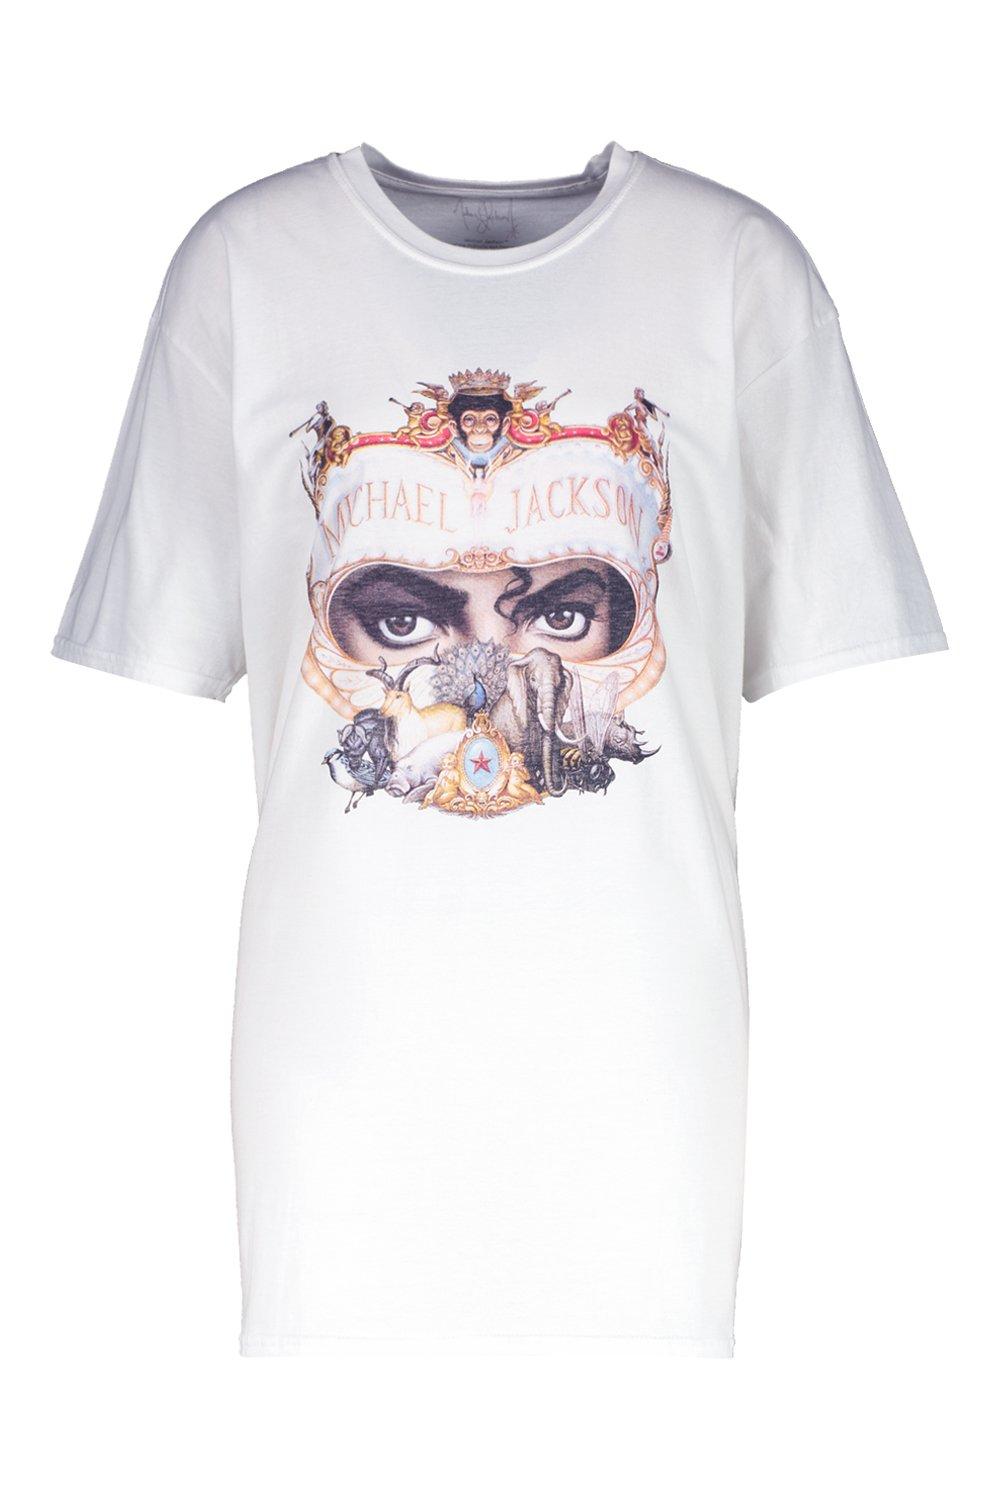 Michael Jackson Dangerous Tour License T-Shirt Dress